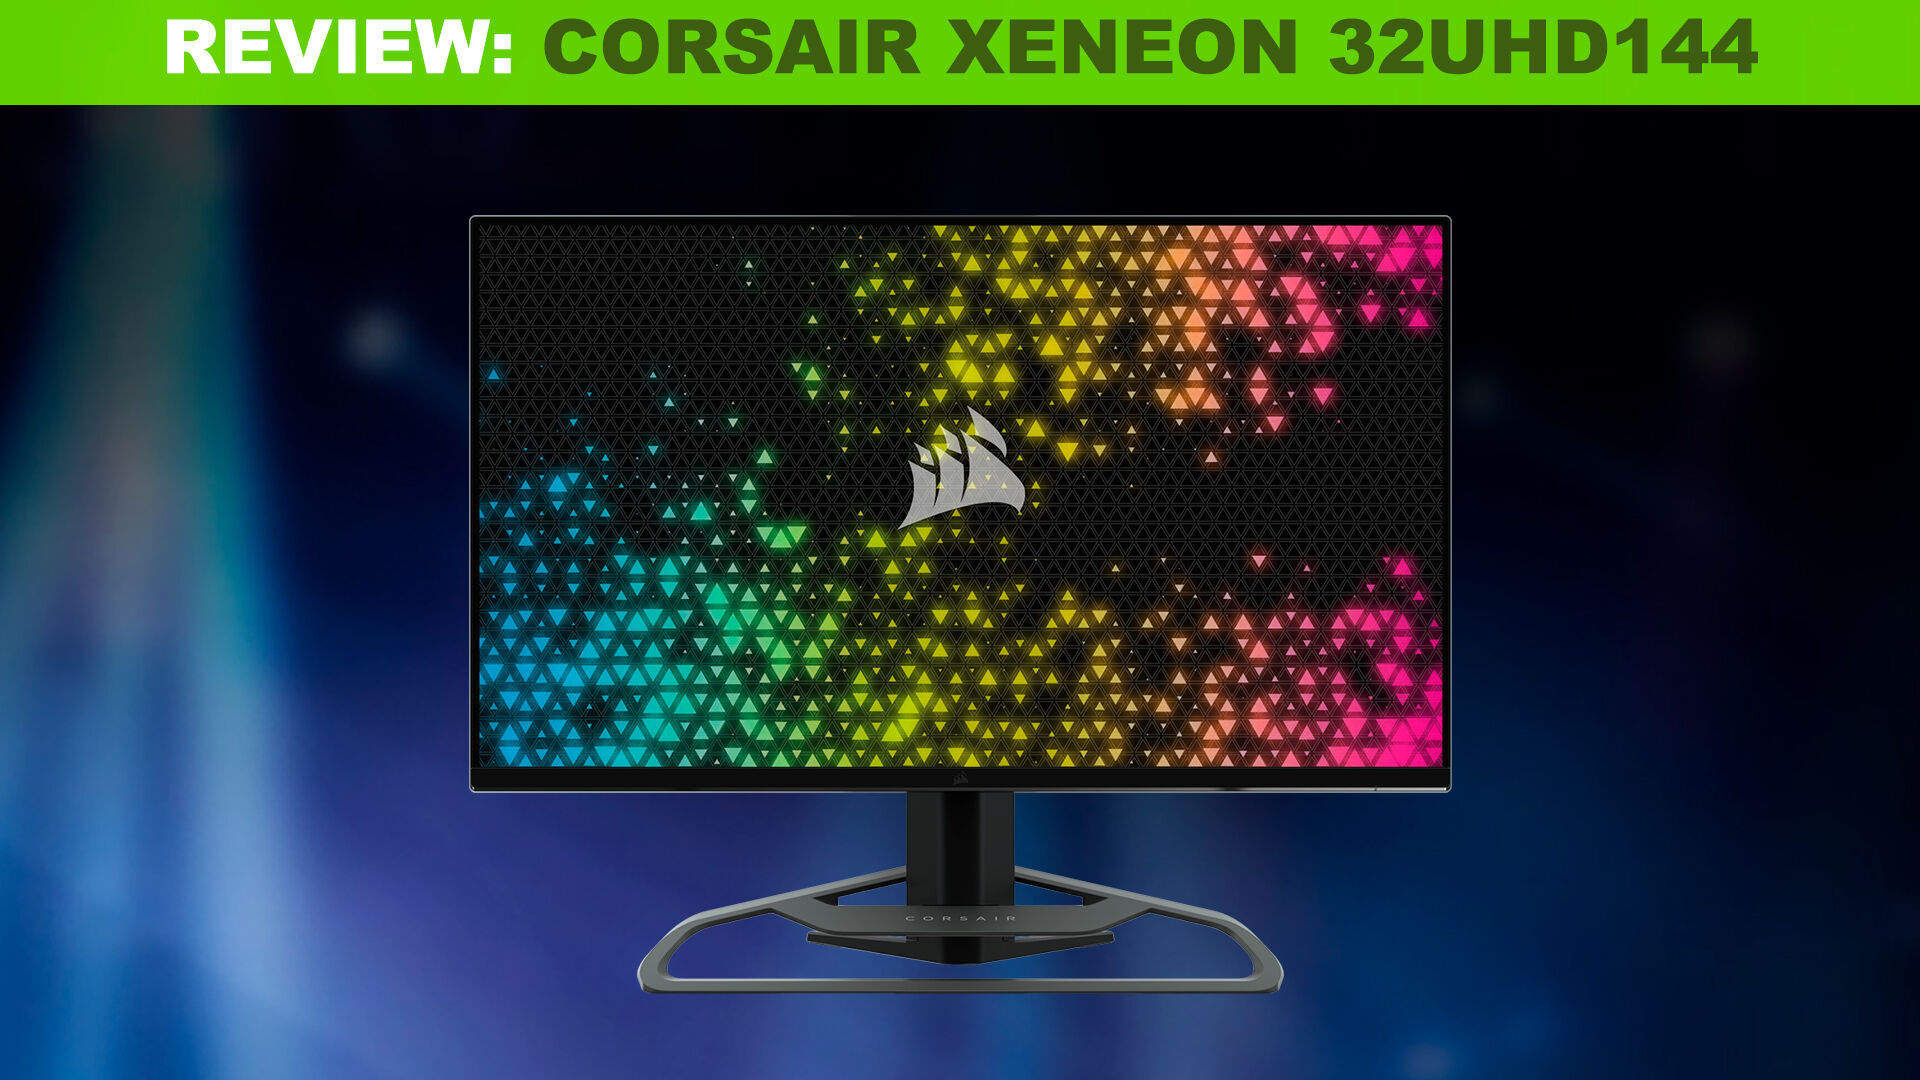 CORSAIR añade dos monitores de 32 a su catálogo con 4K y 144 Hz o QHD